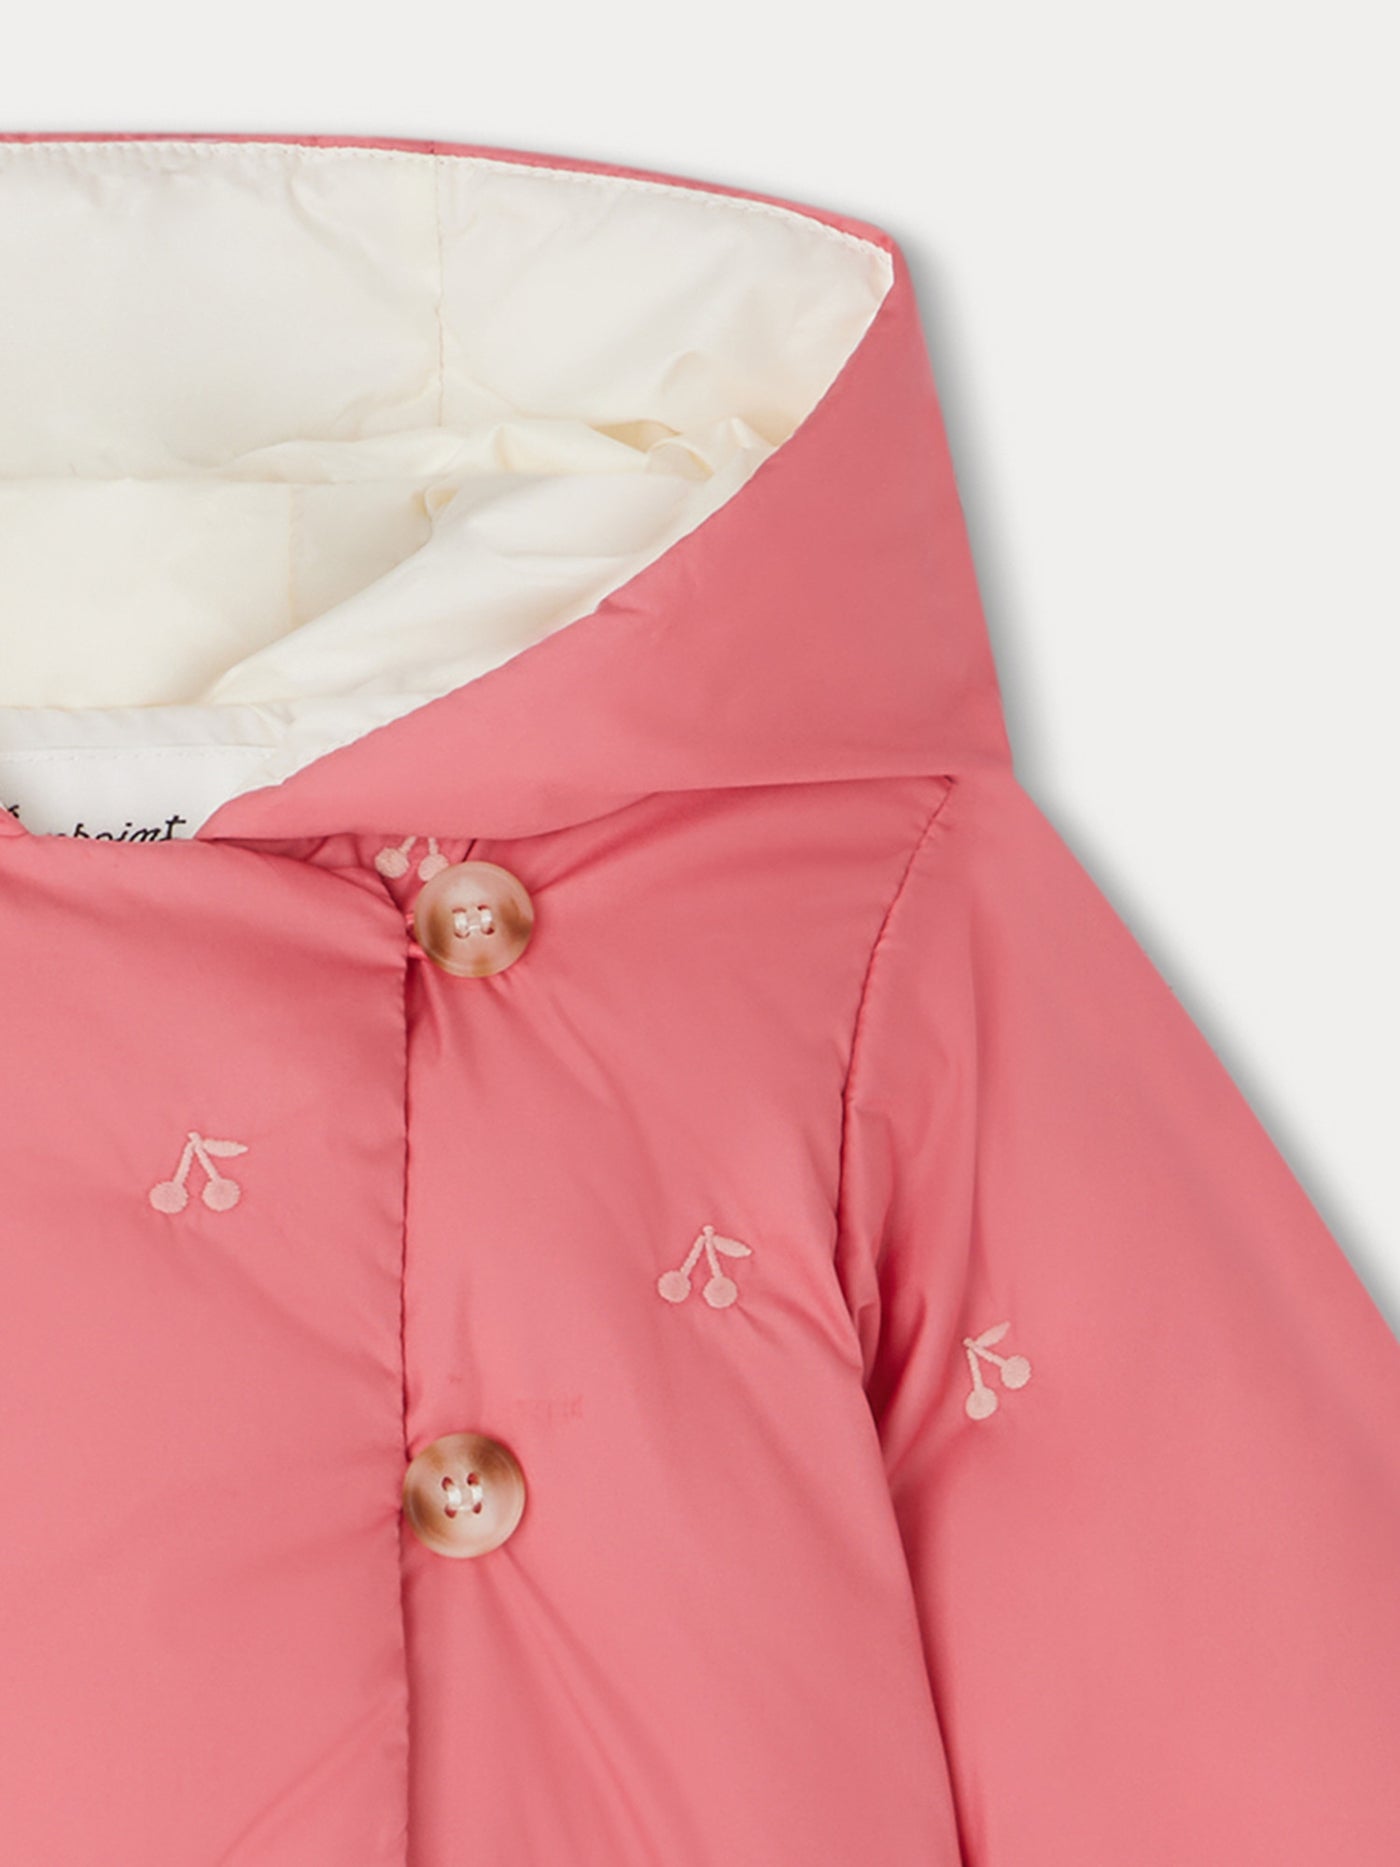 Bonno Jacket camellia pink